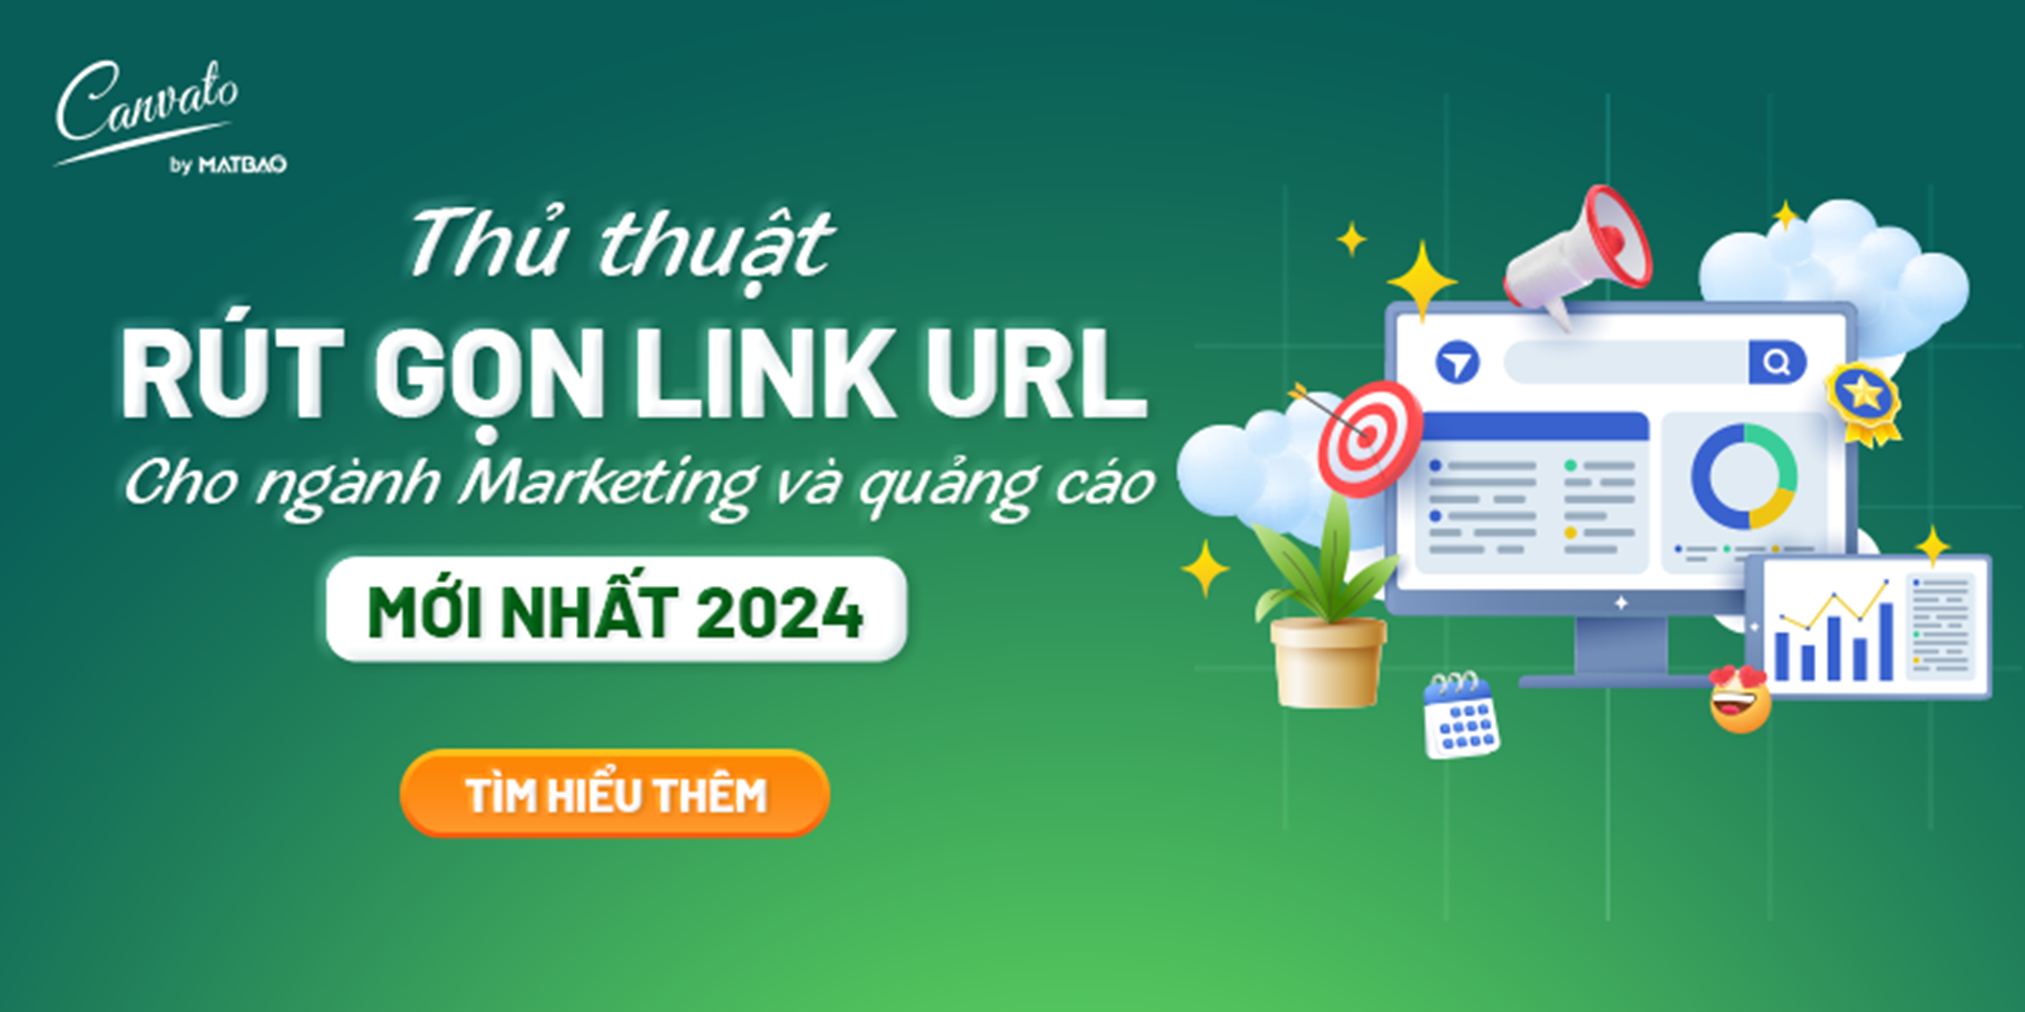 Thủ thuật rút gọn link URL cho ngành Marketing và quảng cáo 2024